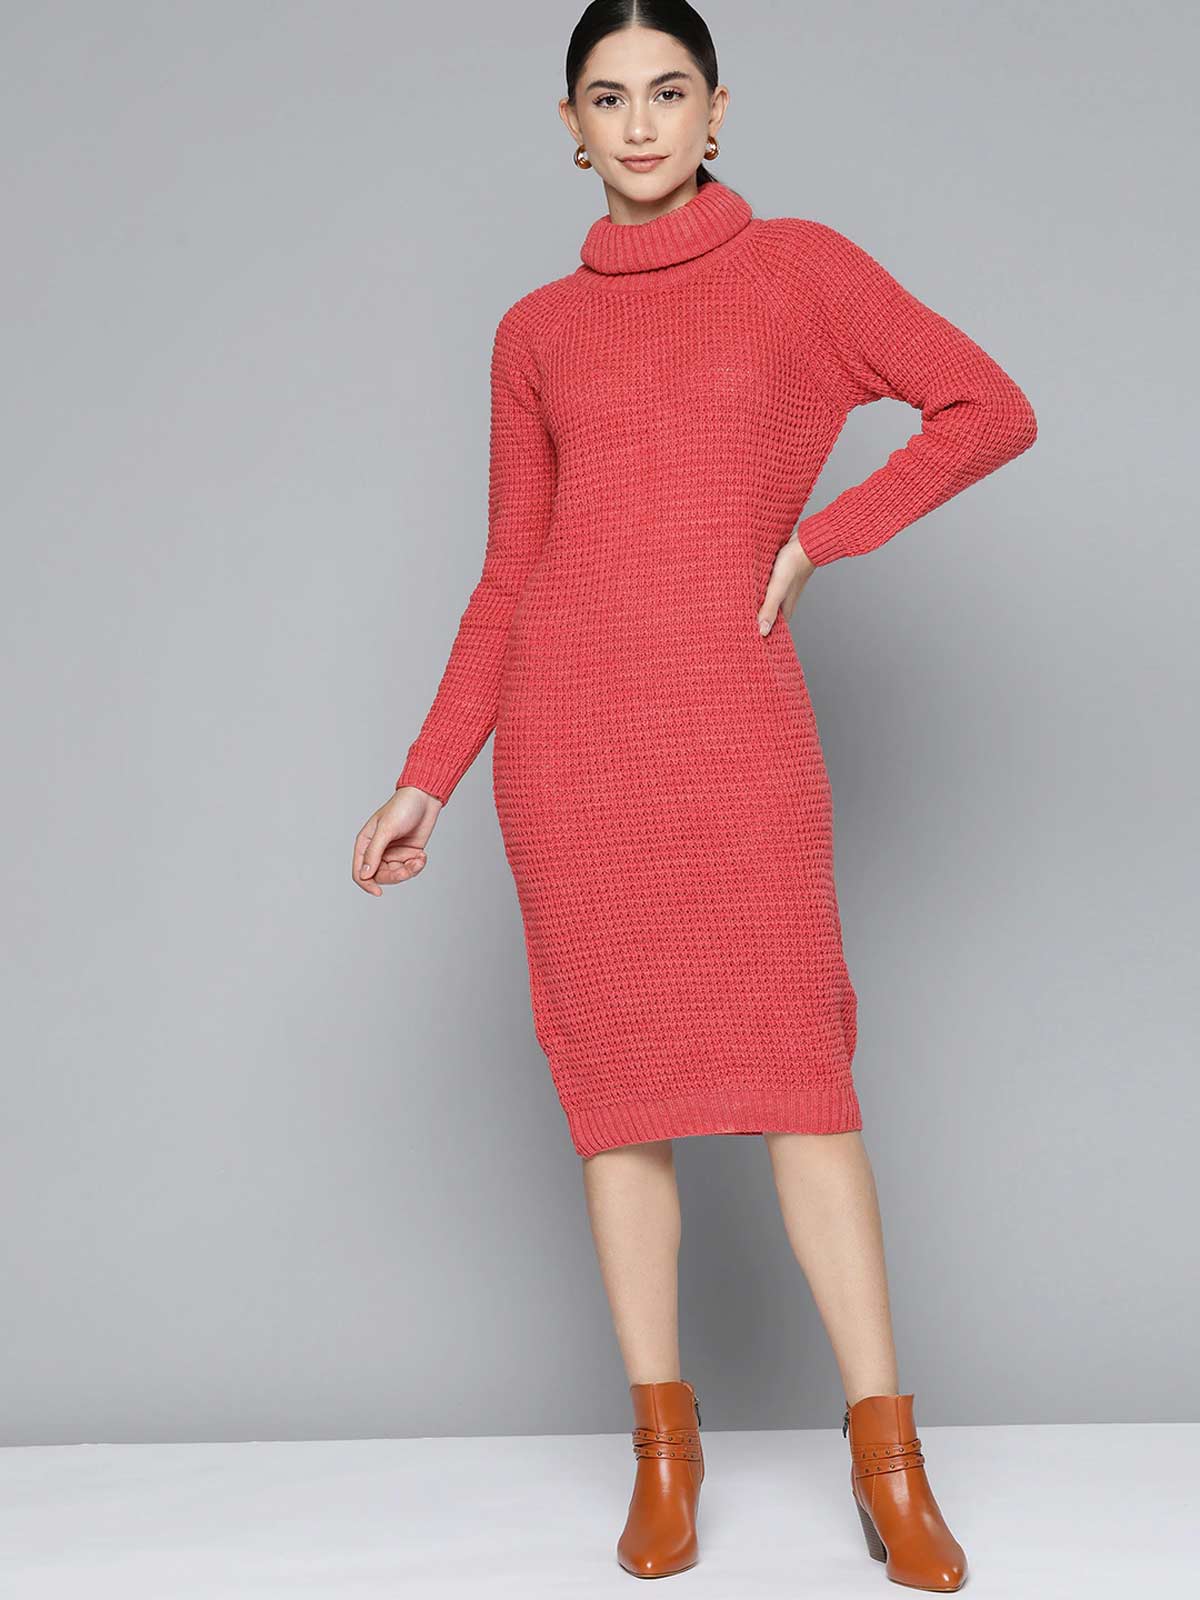 Woollen Dresses | Woollen Dresses To Buy Online | Woollen Dresses Under ...